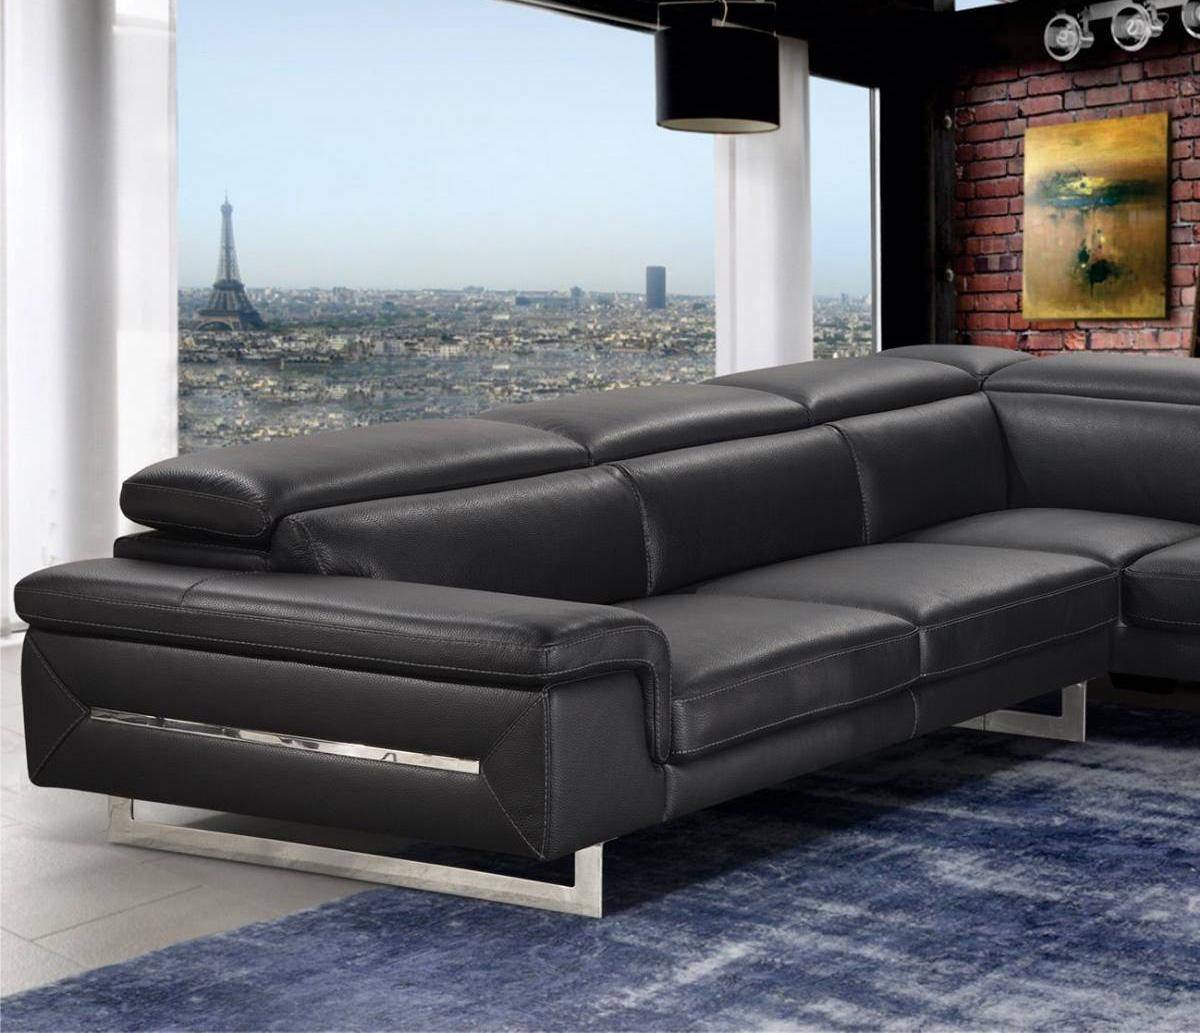 Vig Accenti Italia Lazio Sectional Sofa, Modern Italian Leather Sectional